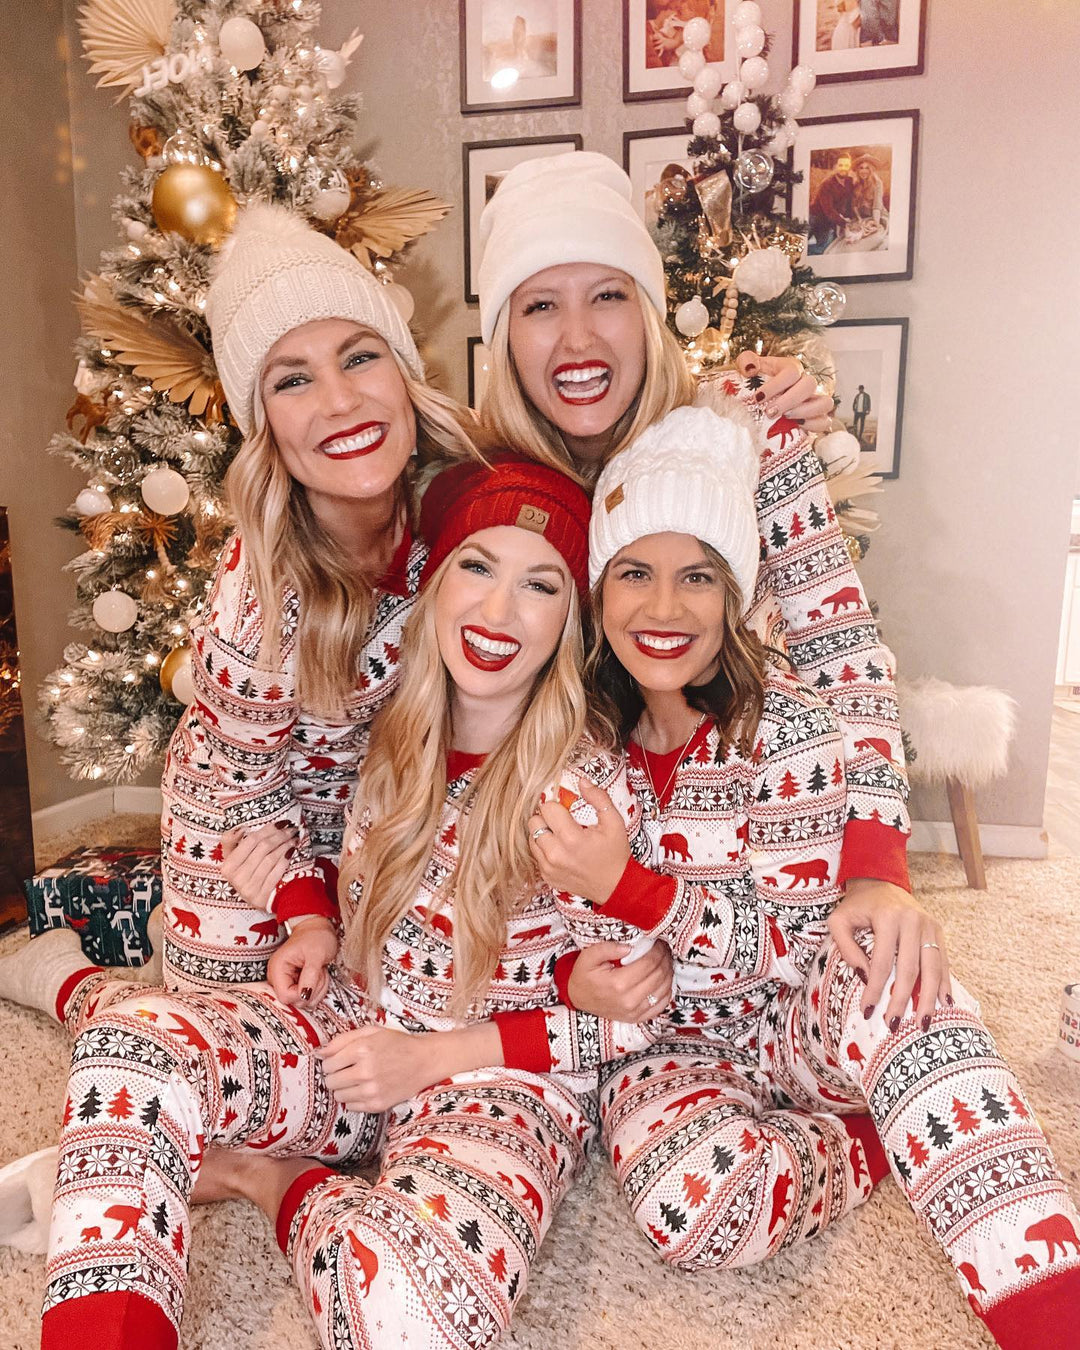 Leuke bijpassende pyjamaset met kerstboom en beerpatroon